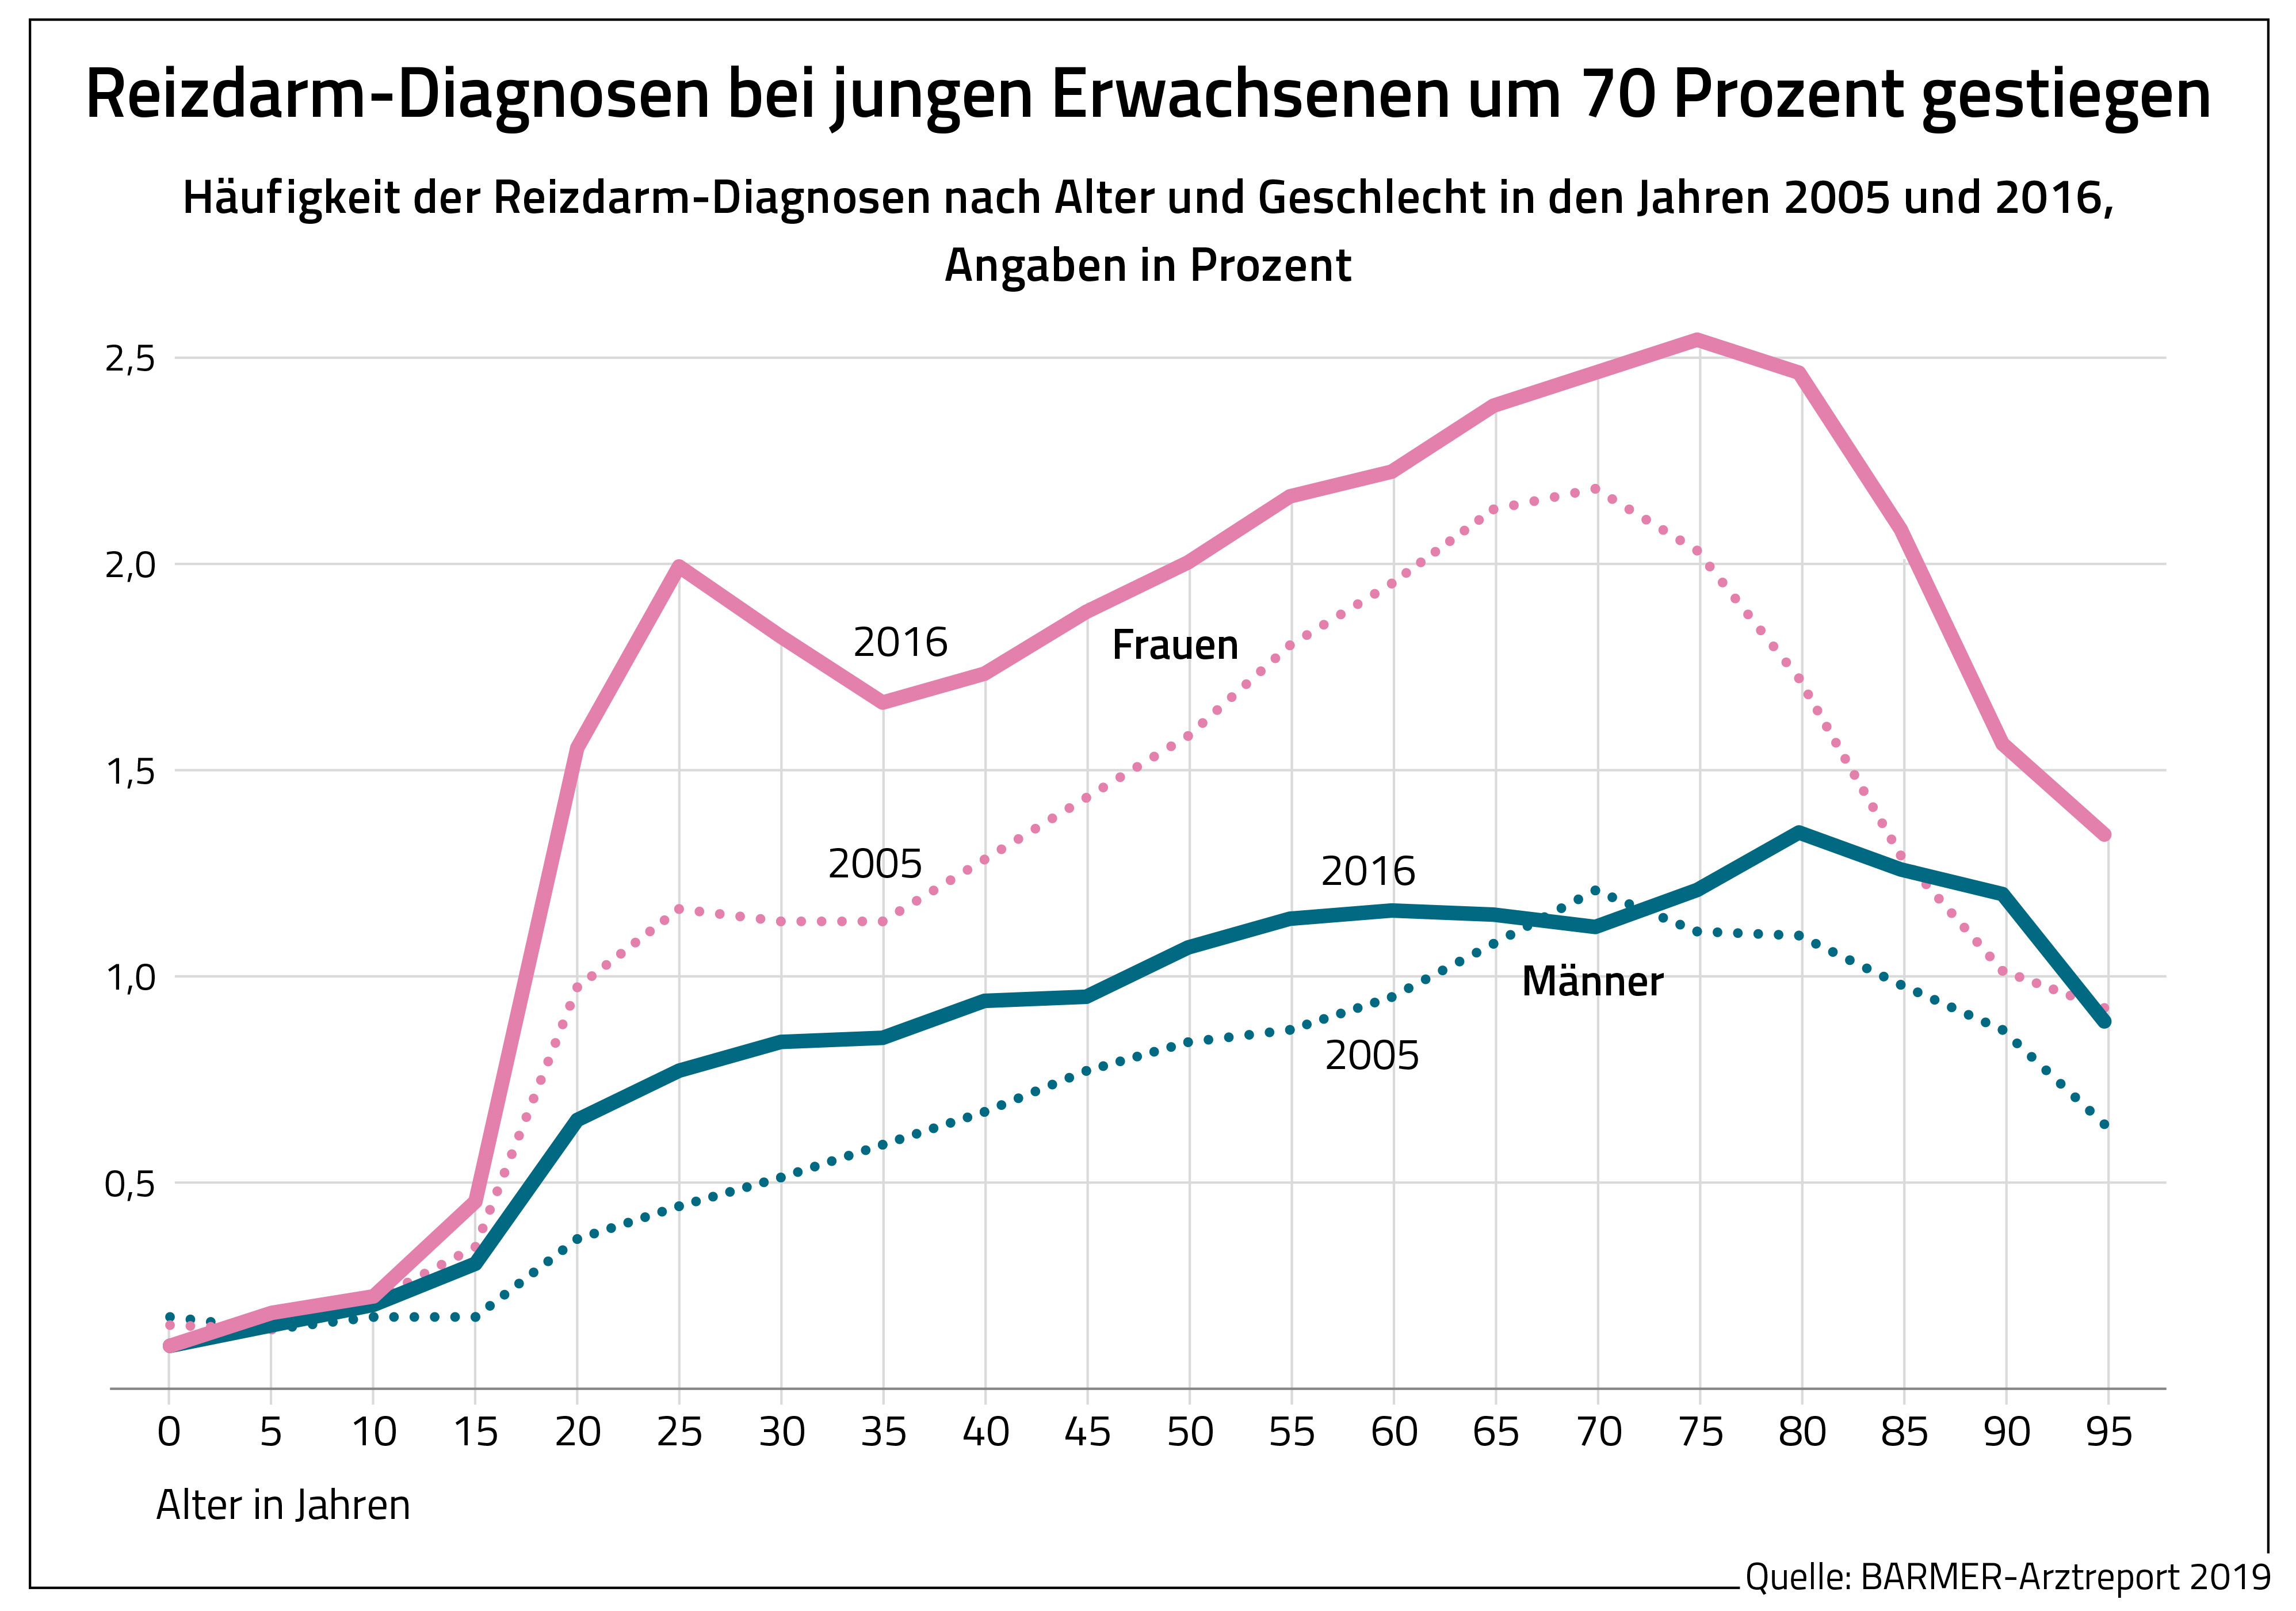 Die Grafik zeigt die Häufigkeit der Reizdarm-Diagnosen nach Alter und Geschlecht in den Jahren 2005 und 2016, Angaben in Prozent